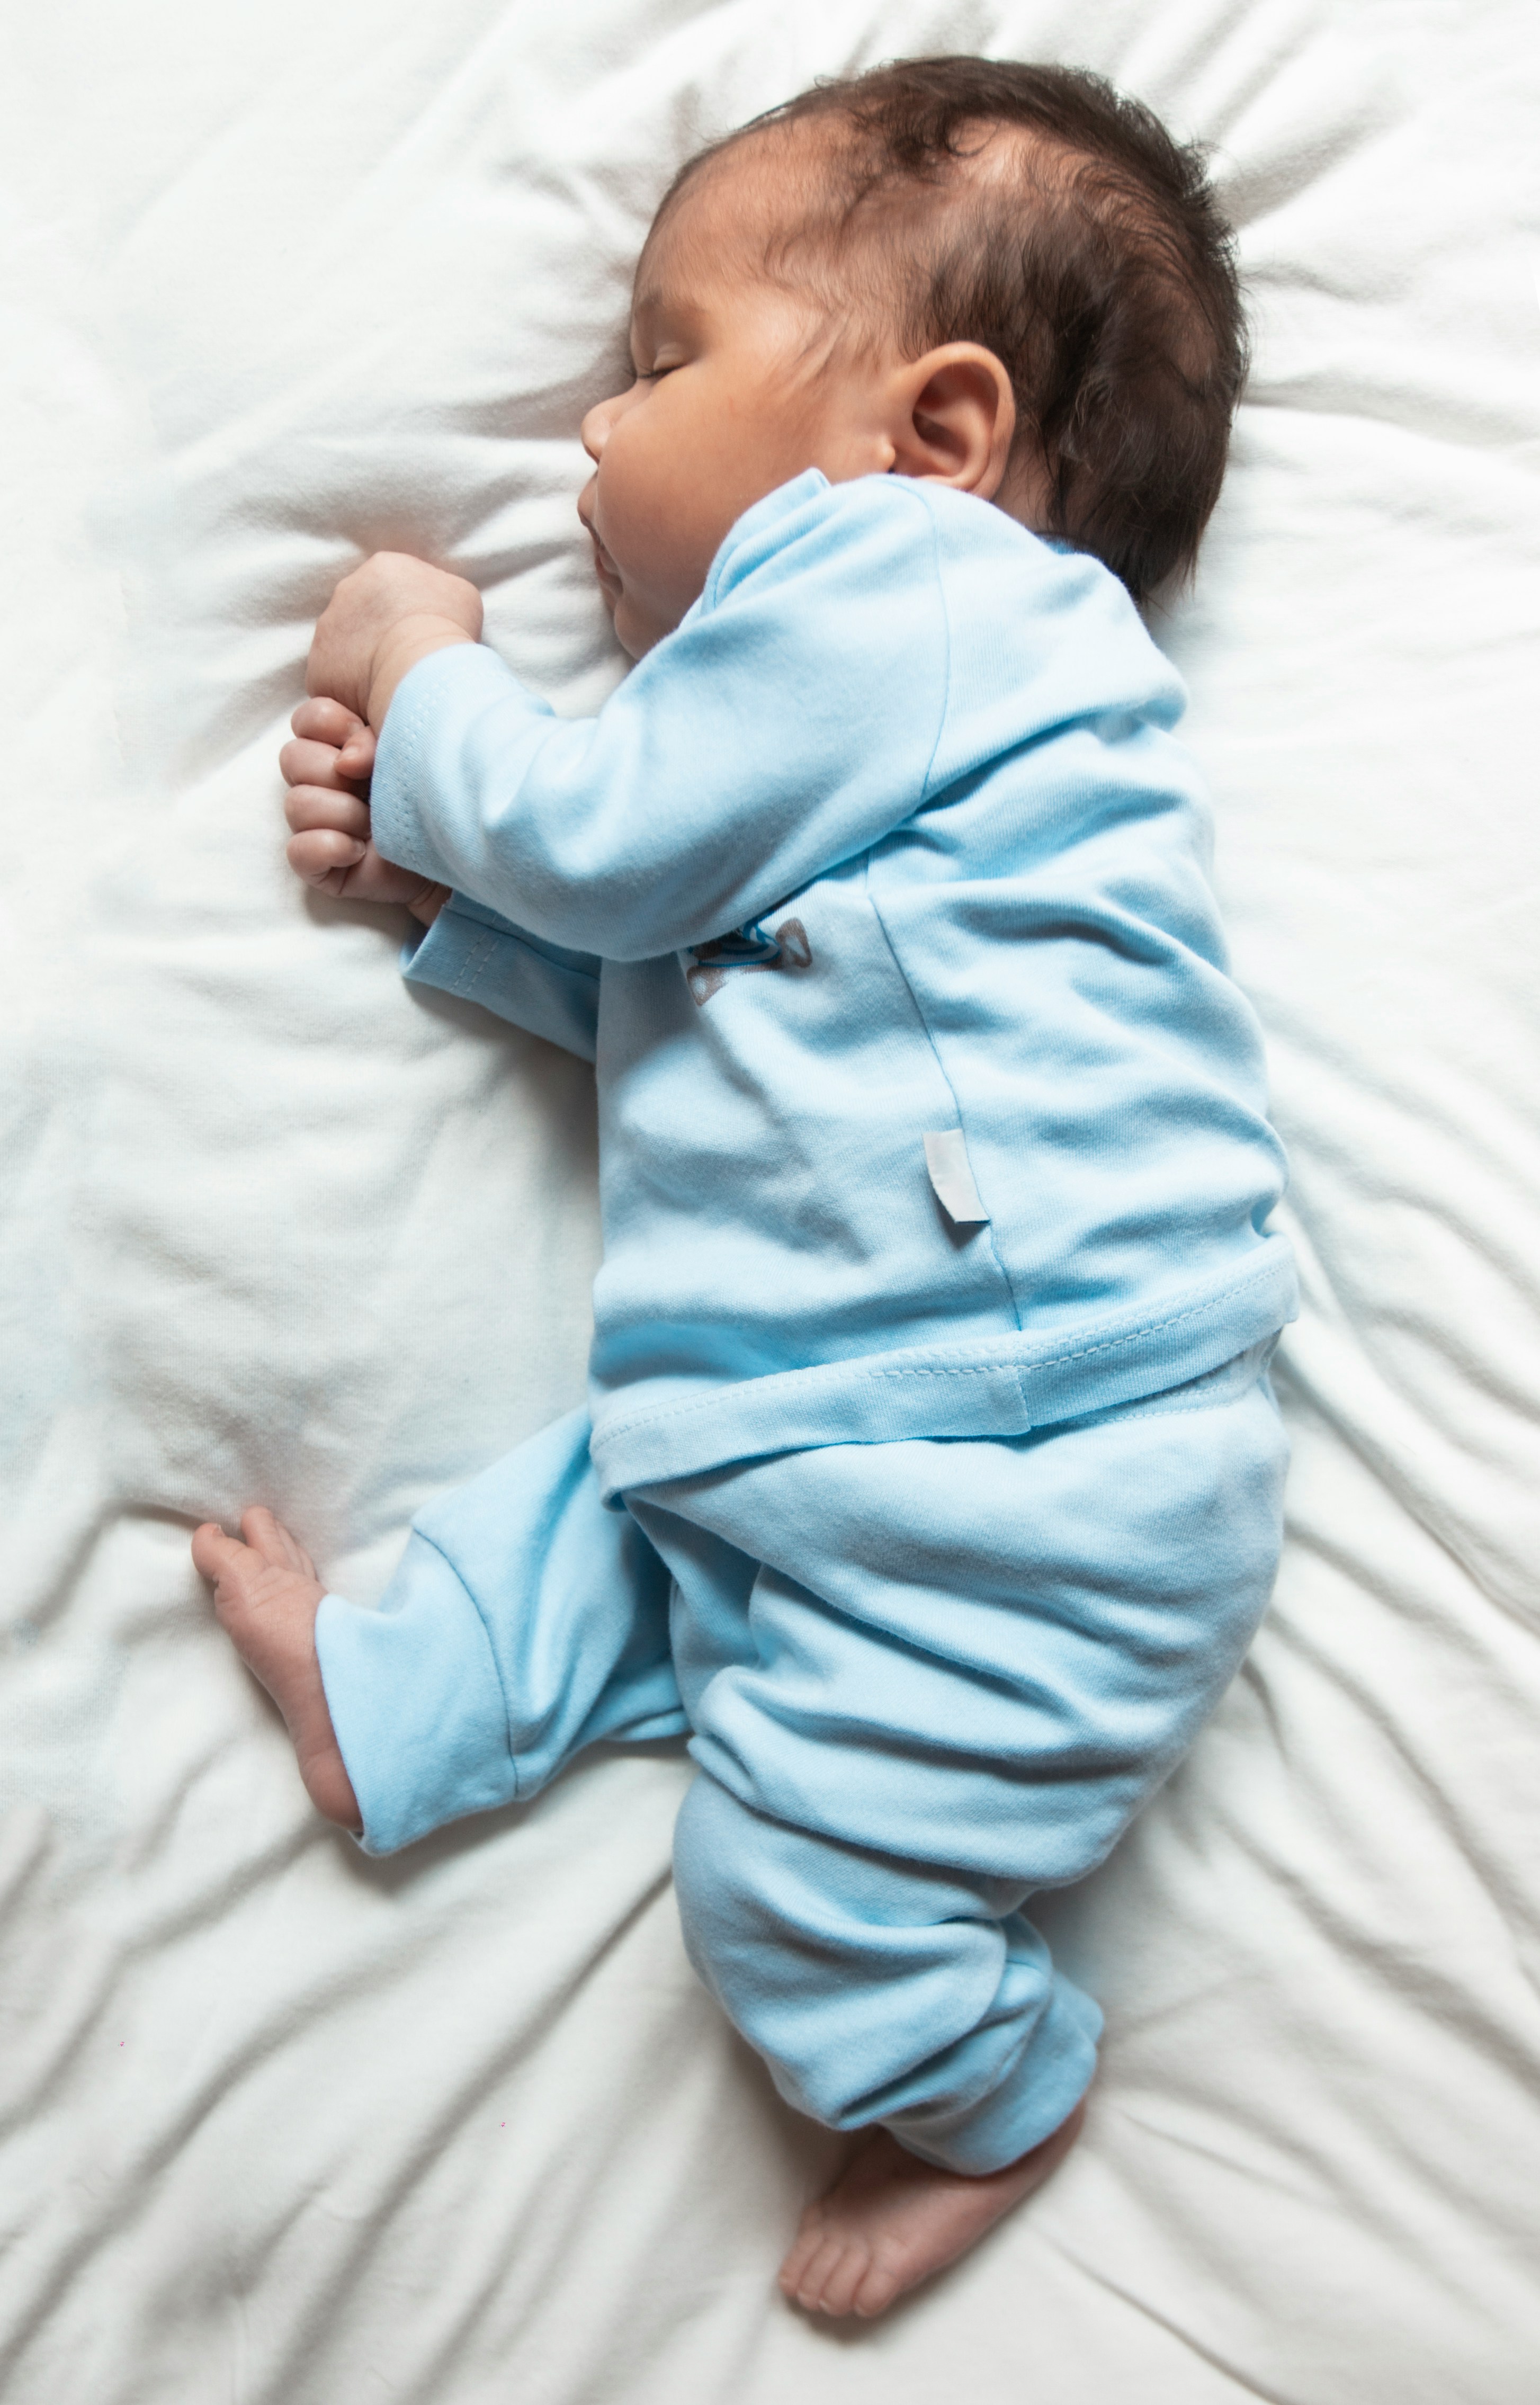 Ein schlafendes Baby | Quelle: Unplash